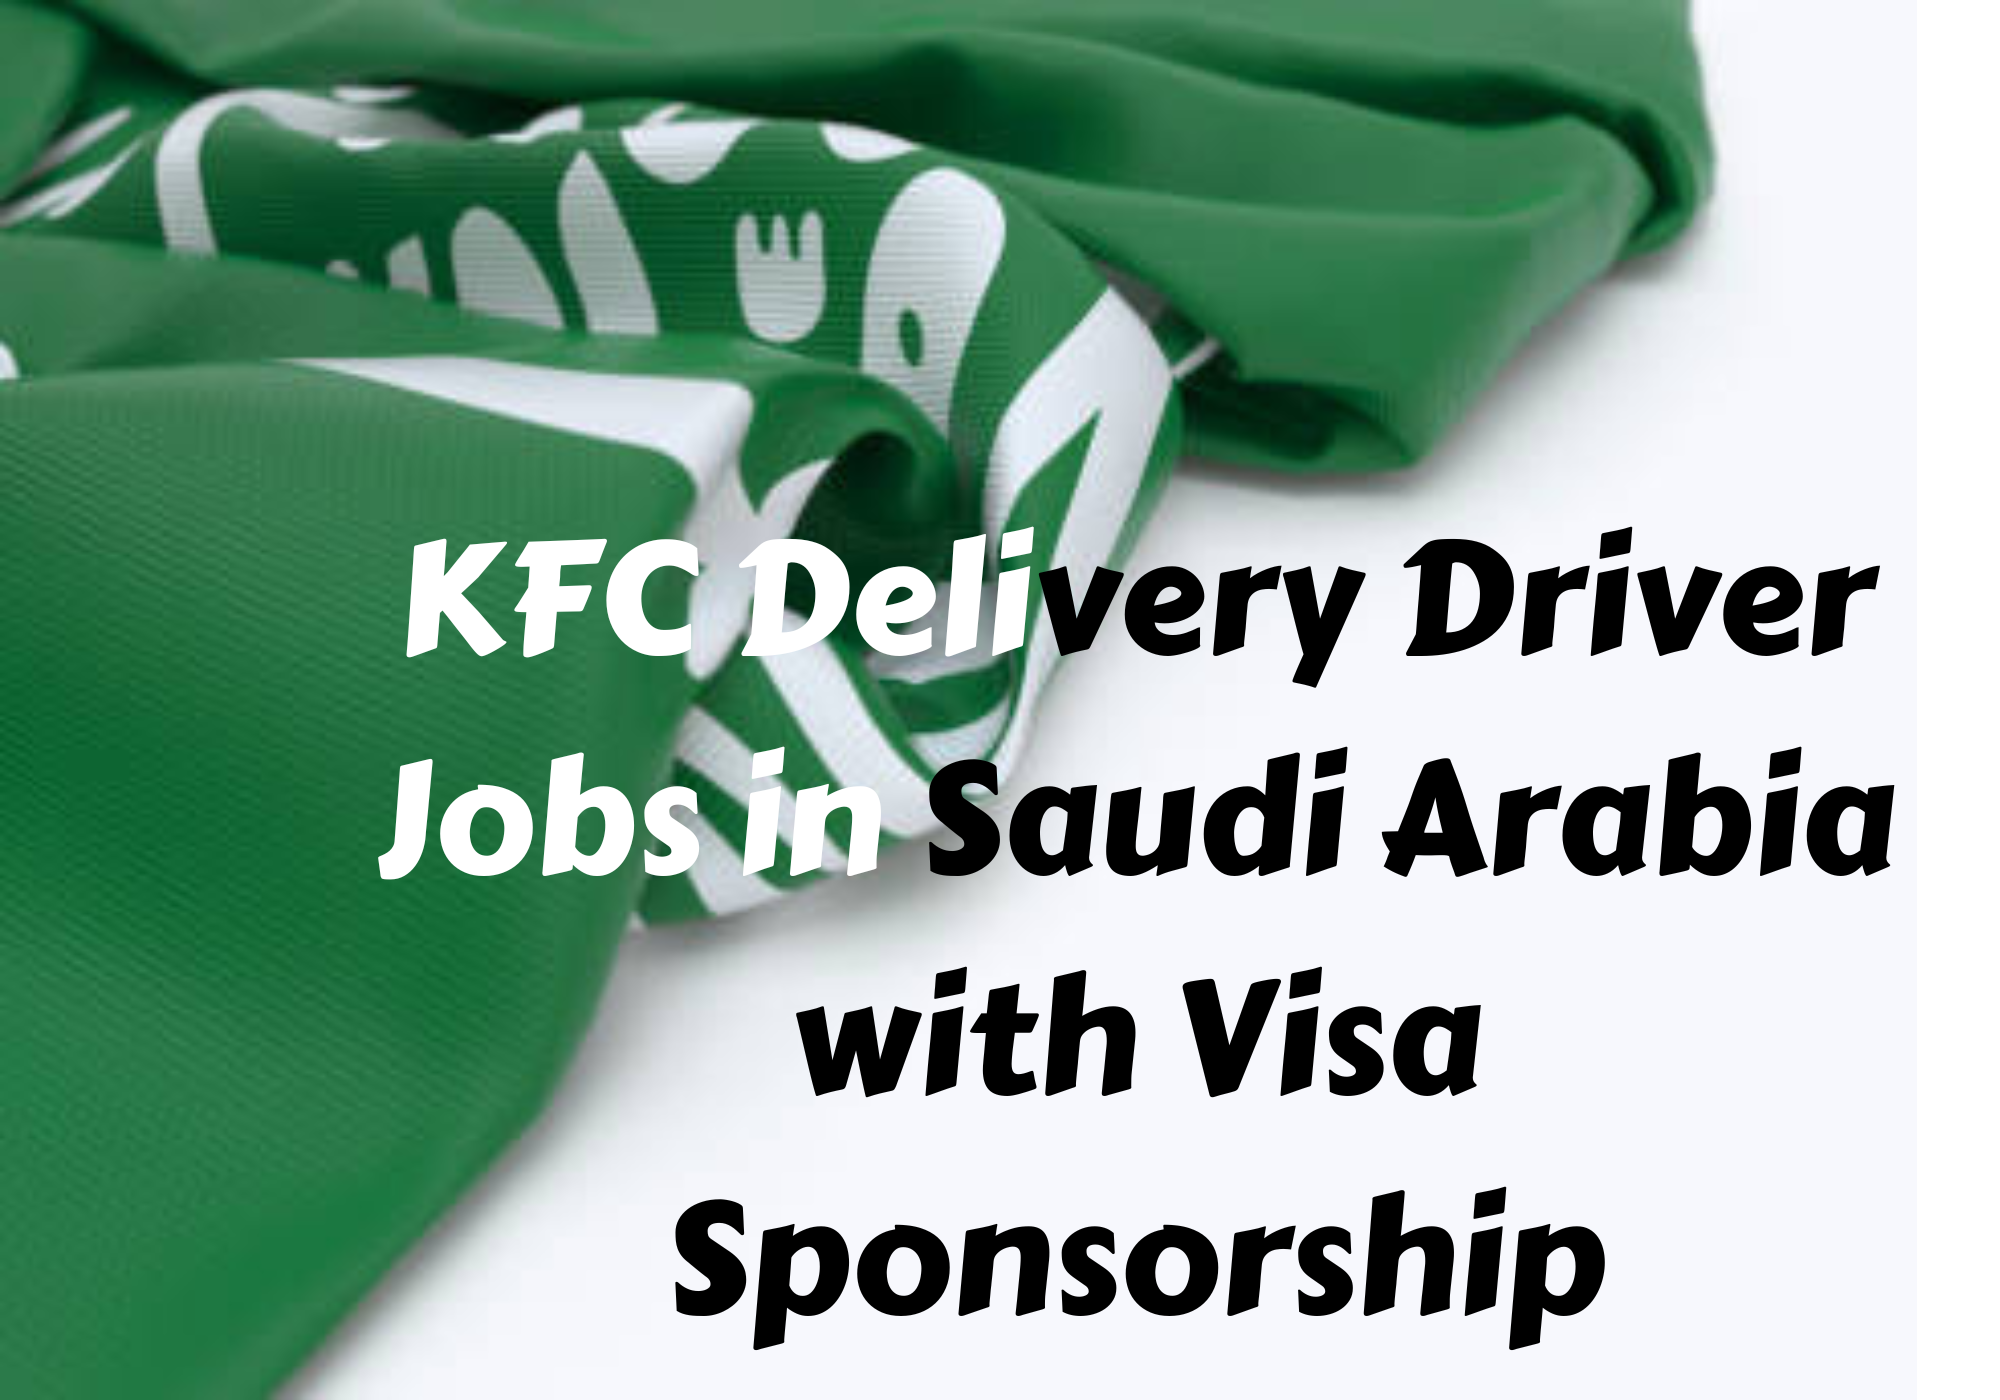 KFC Delivery Driver Jobs in Saudi Arabia with Visa Sponsorship